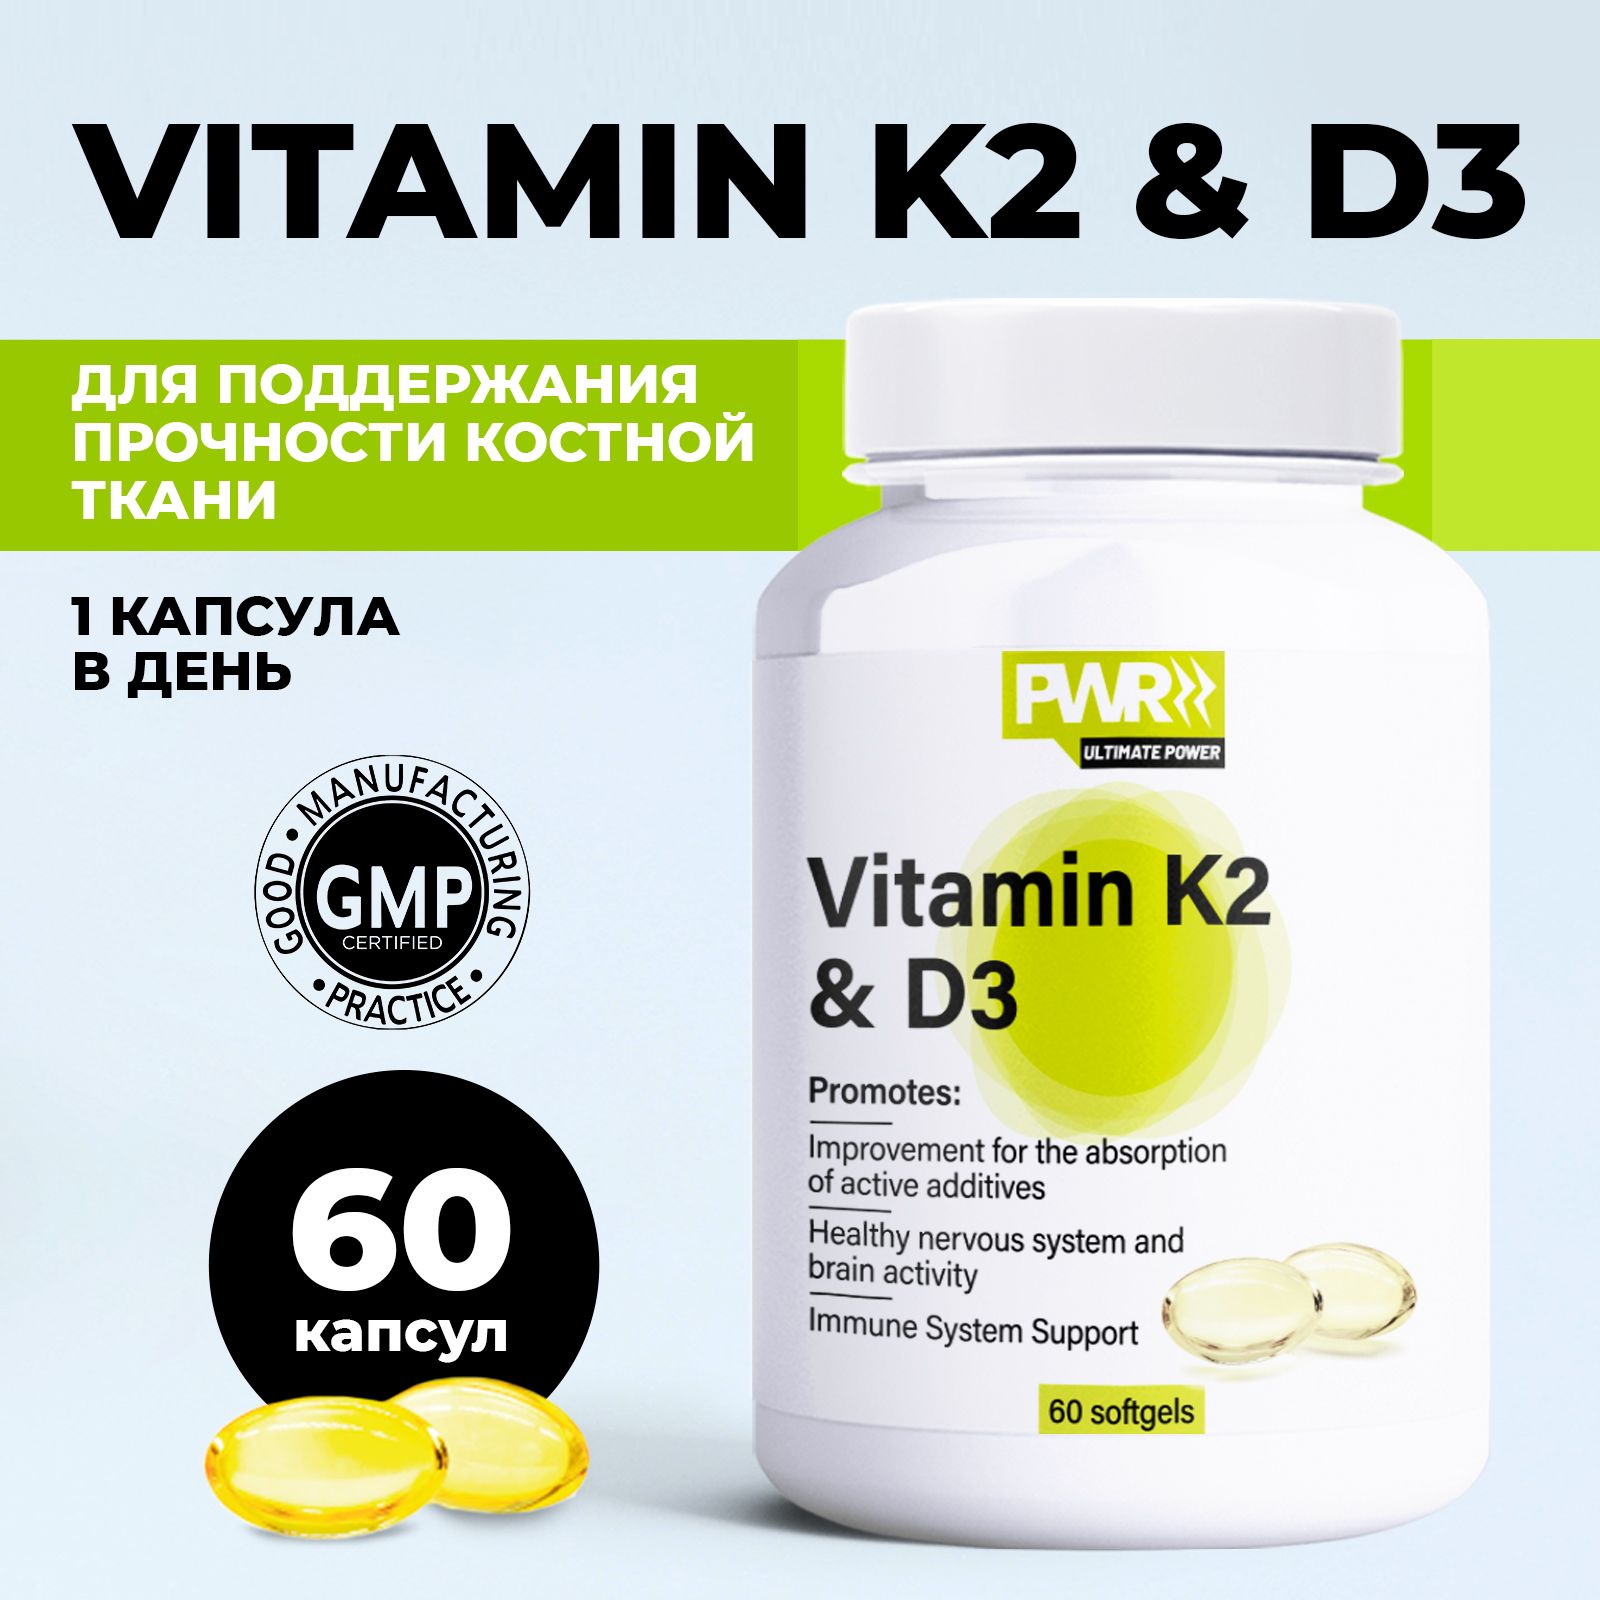 Витамин д3 озон. PWR Ultimate Power витамин д д3. Нордик витамин д3. GLS витамин д3. Орзакс витамин д3 к2.